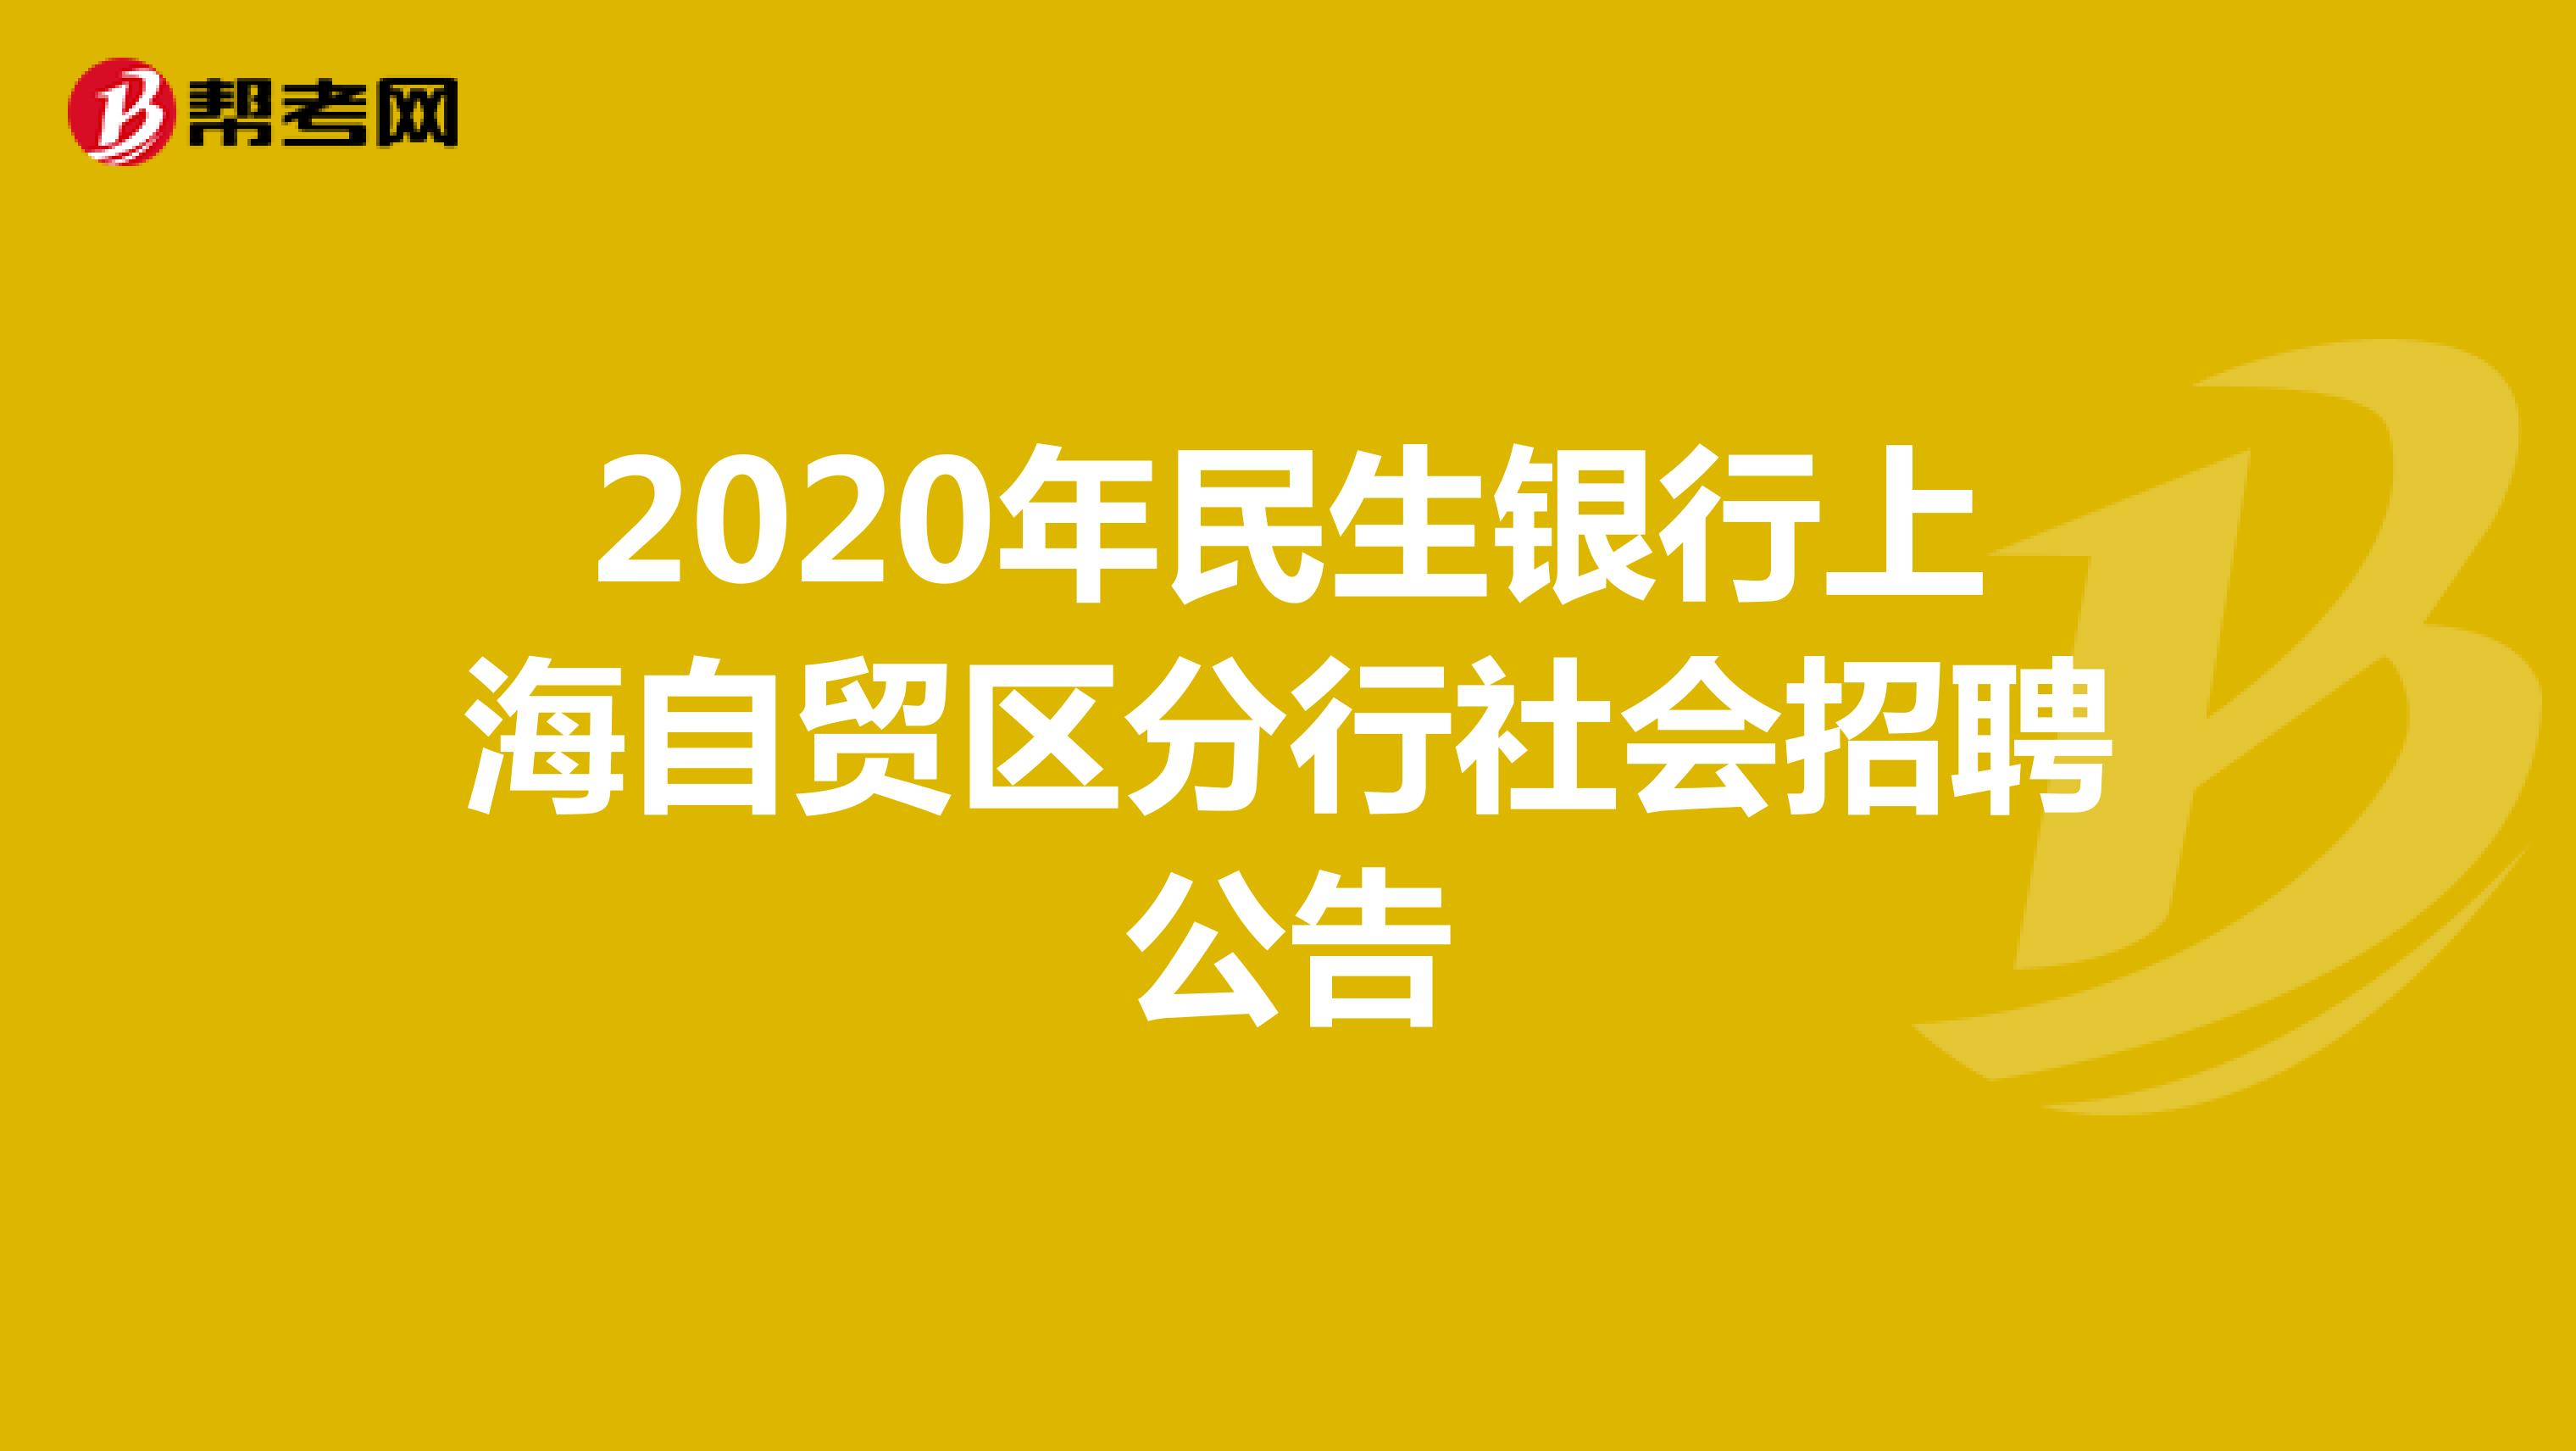 2020年民生银行上海自贸区分行社会招聘公告